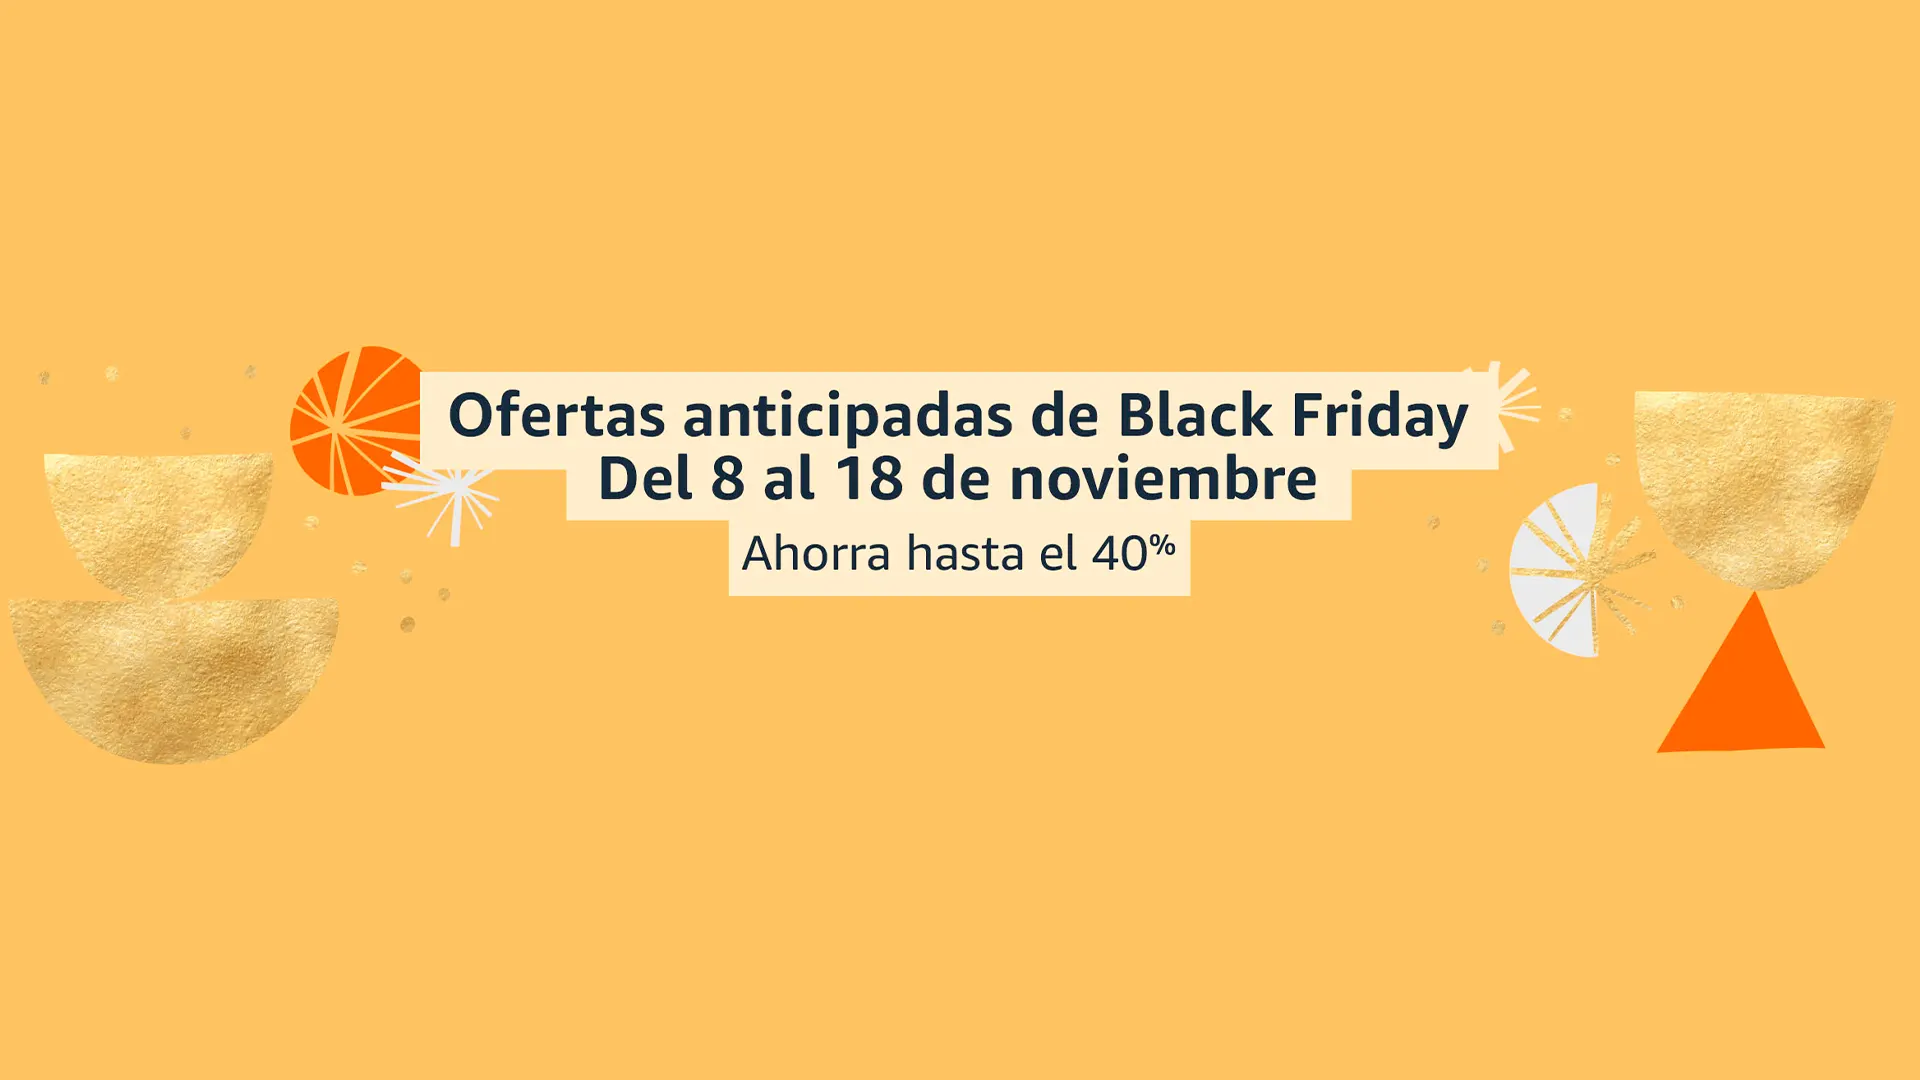 Hoy empiezan las ofertas anticipadas de Black Friday en Amazon, del 8 al 18 de noviembre